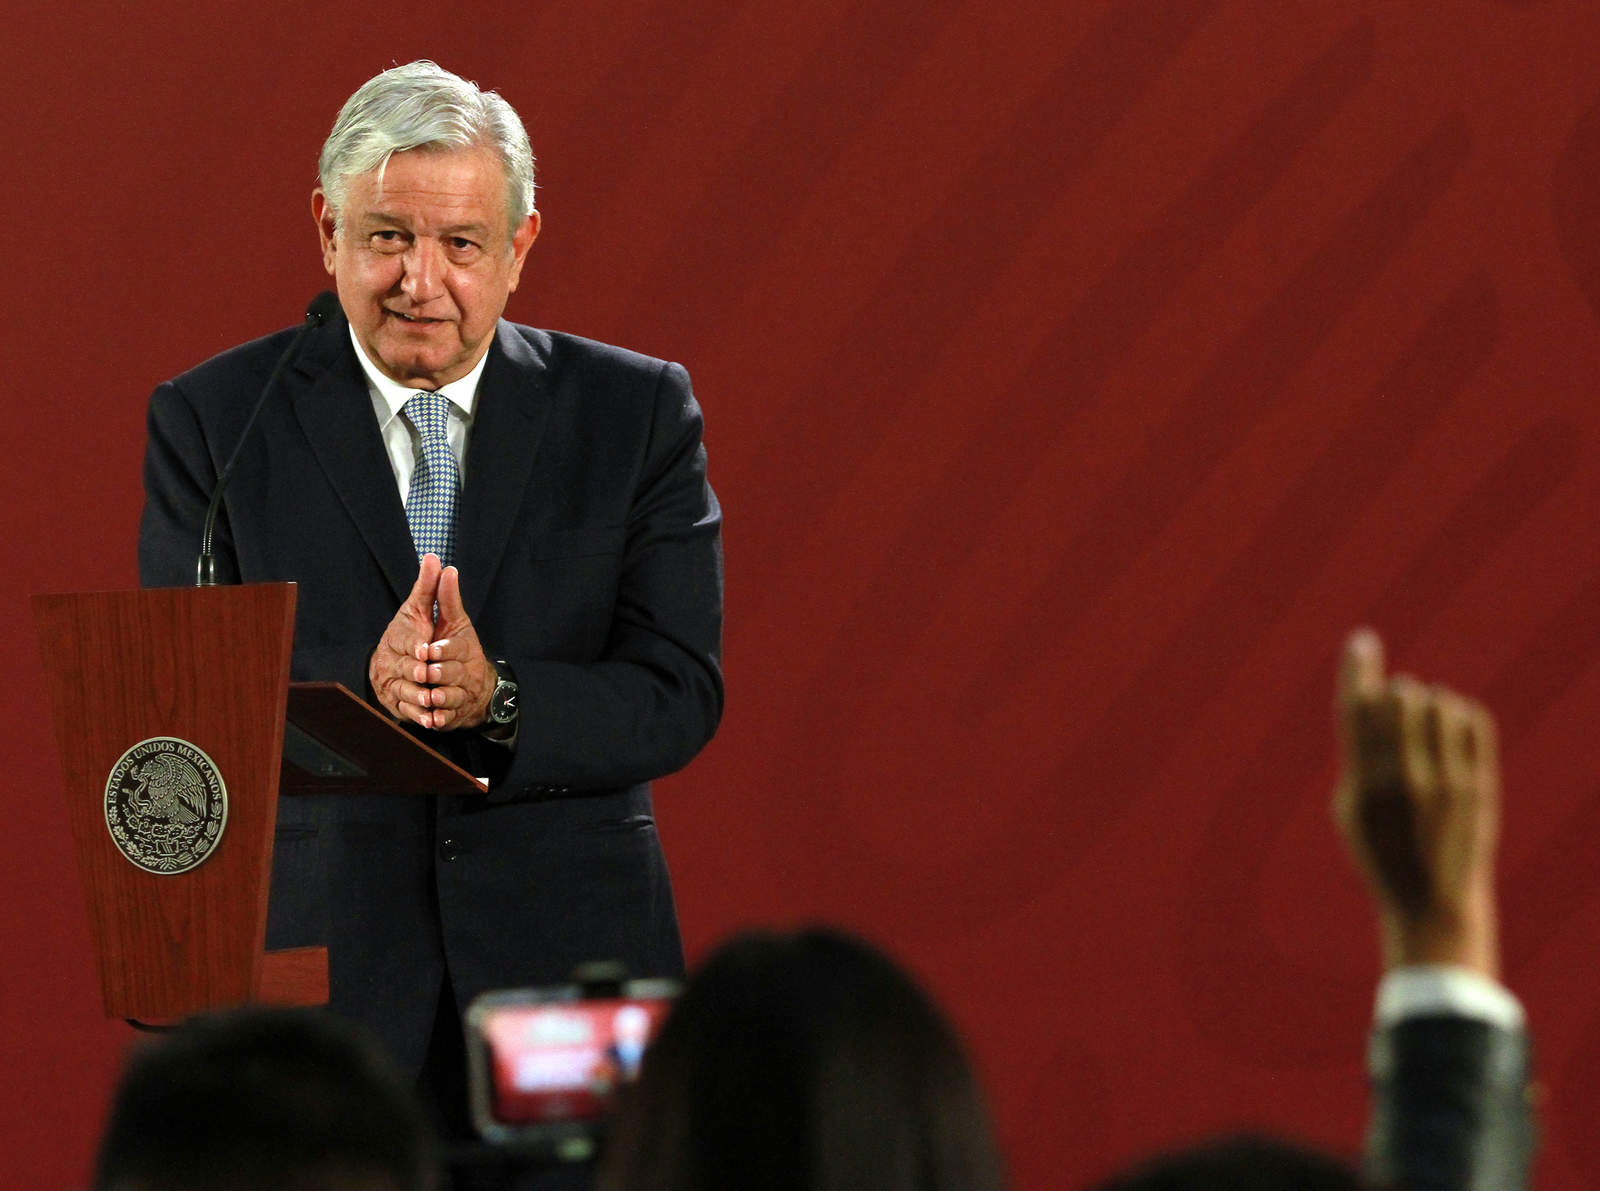 El presidente Andrés Manuel López Obrador, señaló que su gobierno propuso reducir los salarios a los altos funcionarios porque son 'ofensivos y exagerados', particularmente los del Poder Judicial, que en ocasiones llegan a reunir hasta 600 mil pesos mensuales. (NOTIMEX)